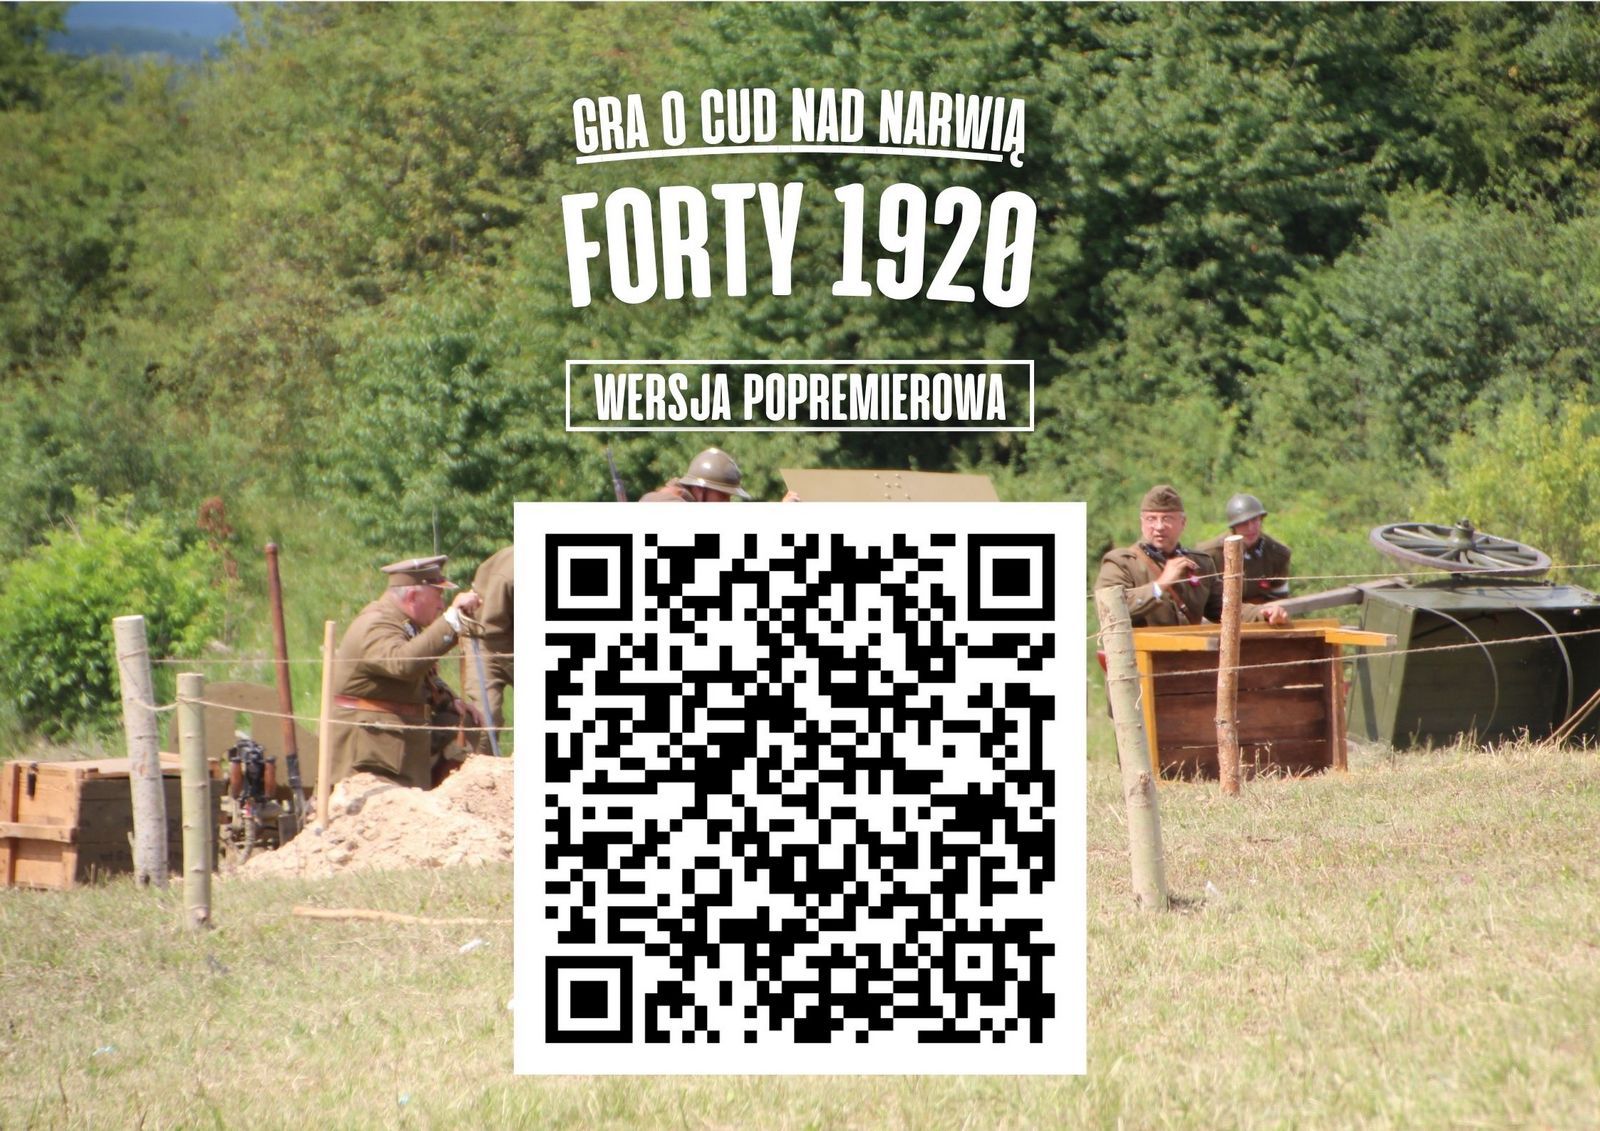 "Gra o cud nad Narwią - Forty 1920" - popremierowa wersja gry